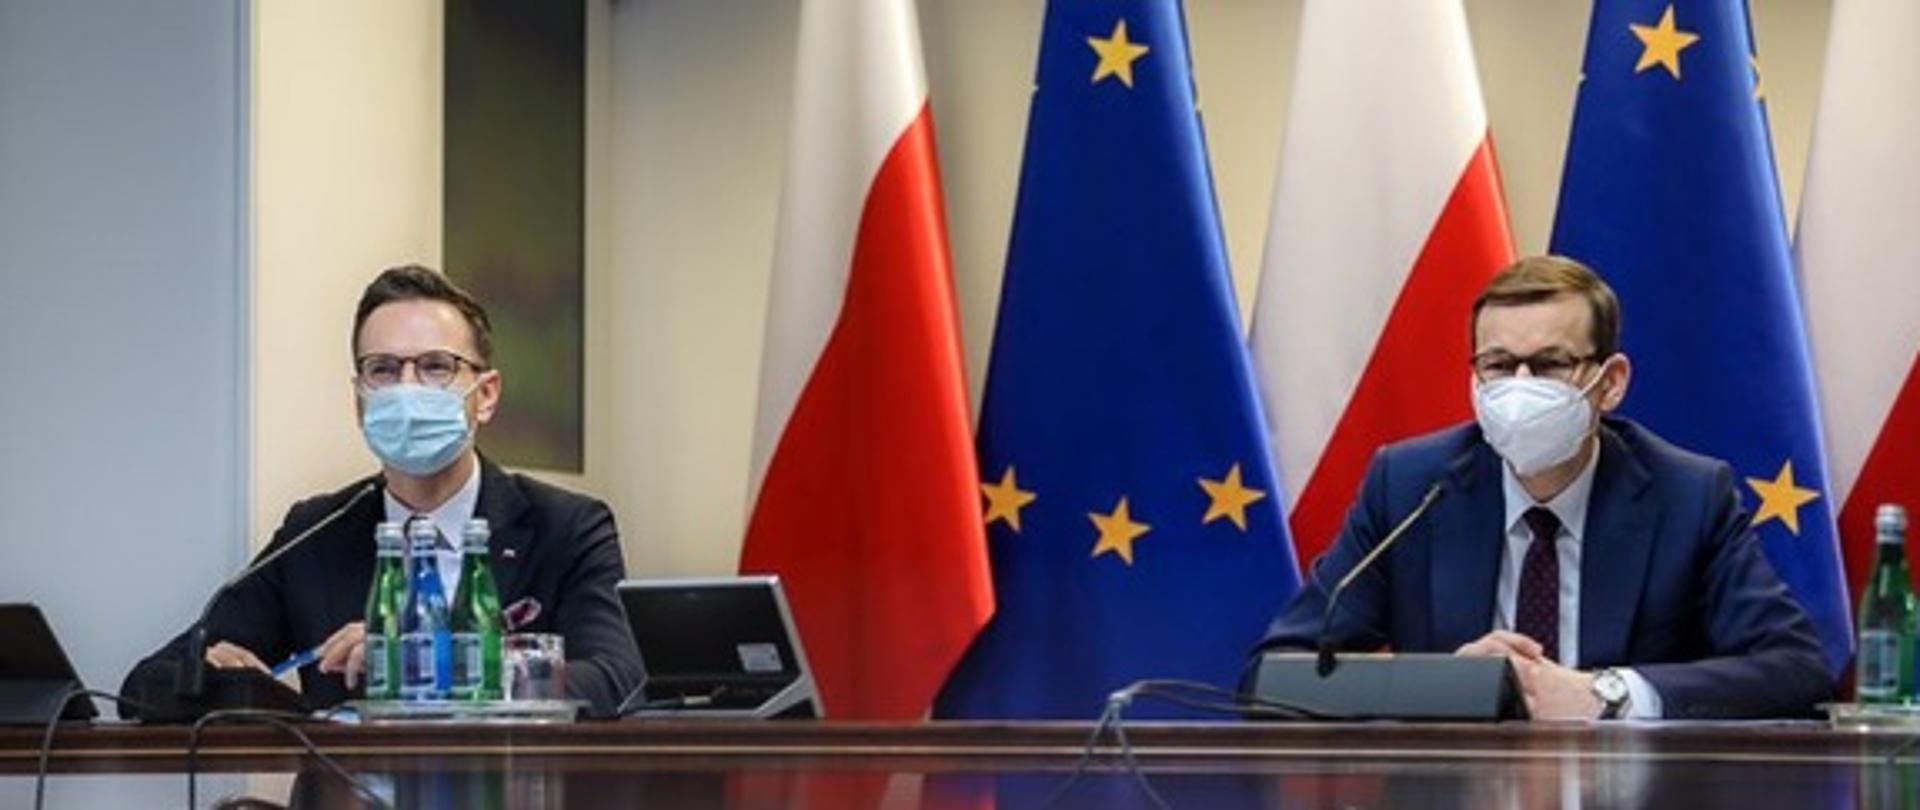 Przy stole konferencyjnym siedzą wiceminister Waldemar Buda oraz premier Mateusz Morawiecki. Za ich plecami flagi Polski i UE